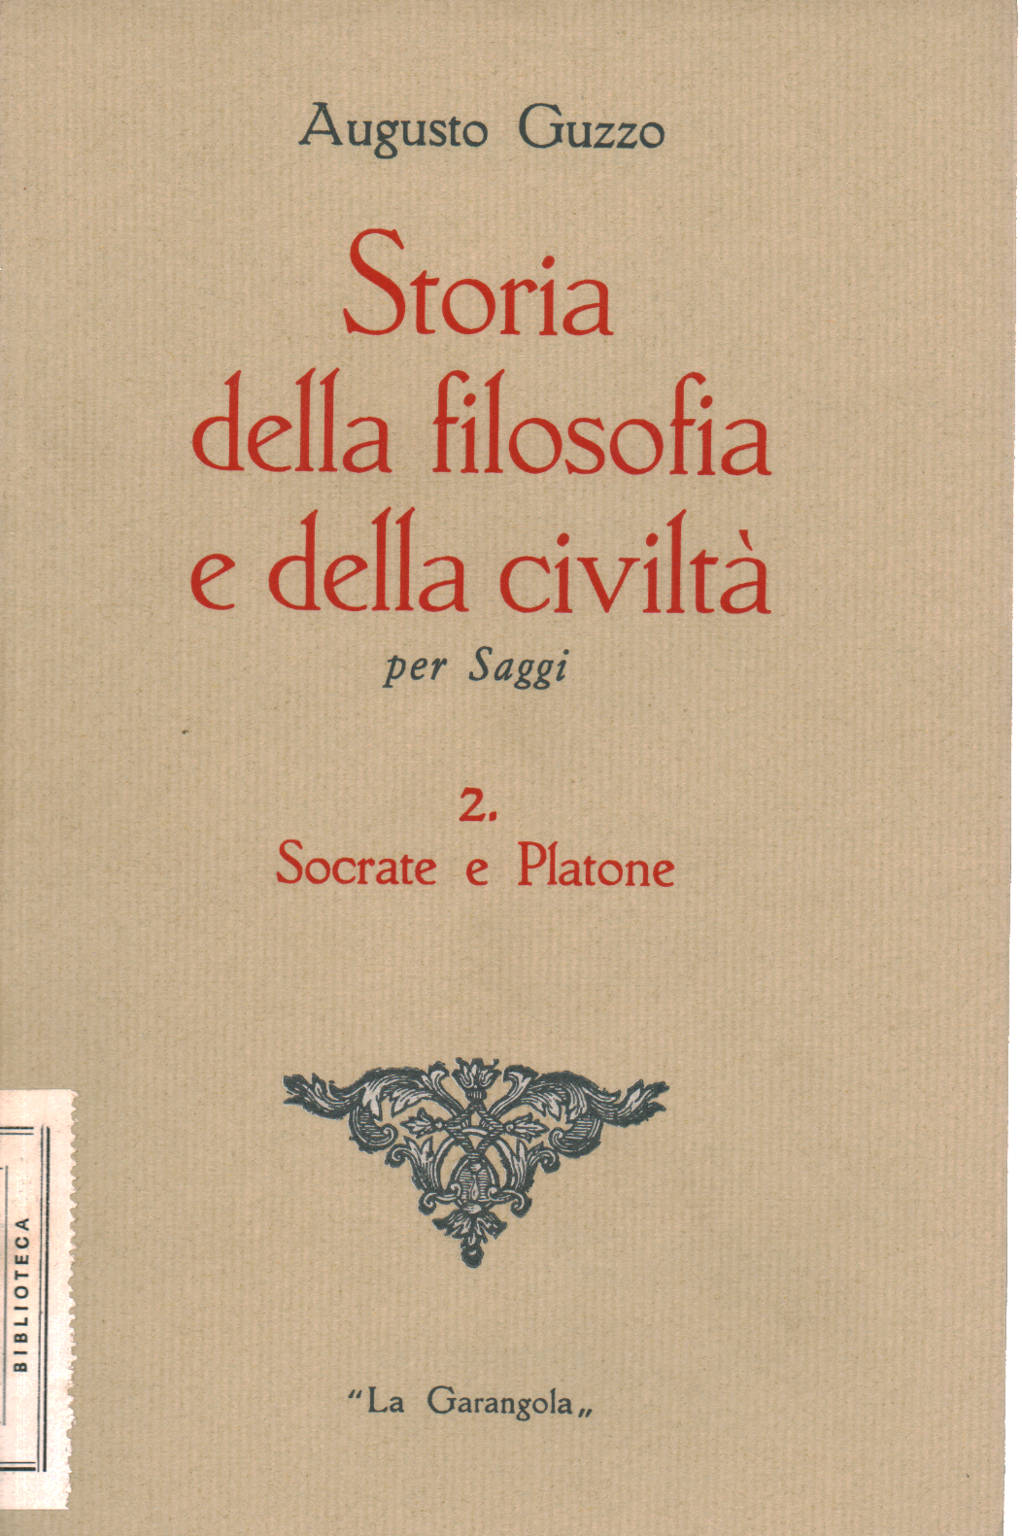 Socrate e Platone, Augusto Guzzo